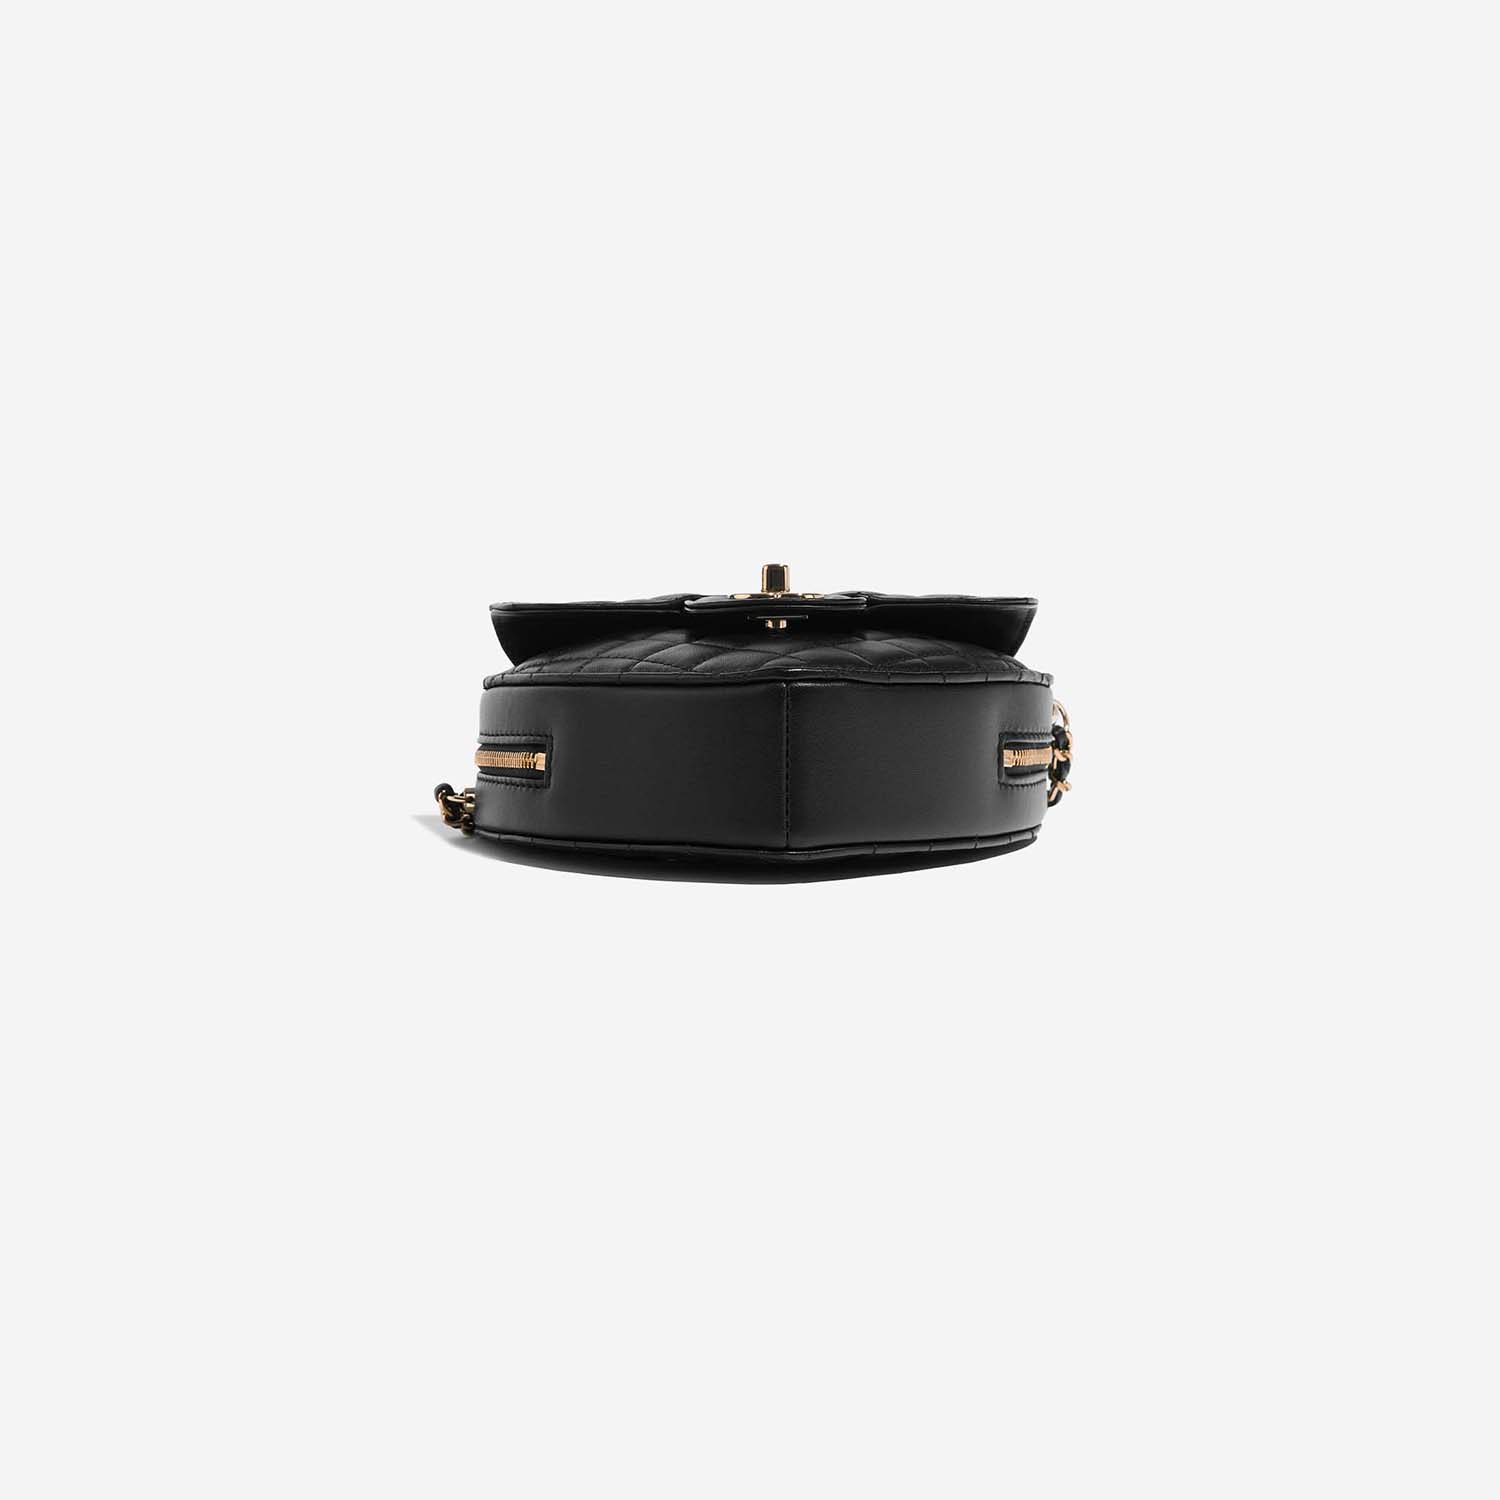 Chanel TimelessHeart Medium Black Bottom | Verkaufen Sie Ihre Designer-Tasche auf Saclab.com